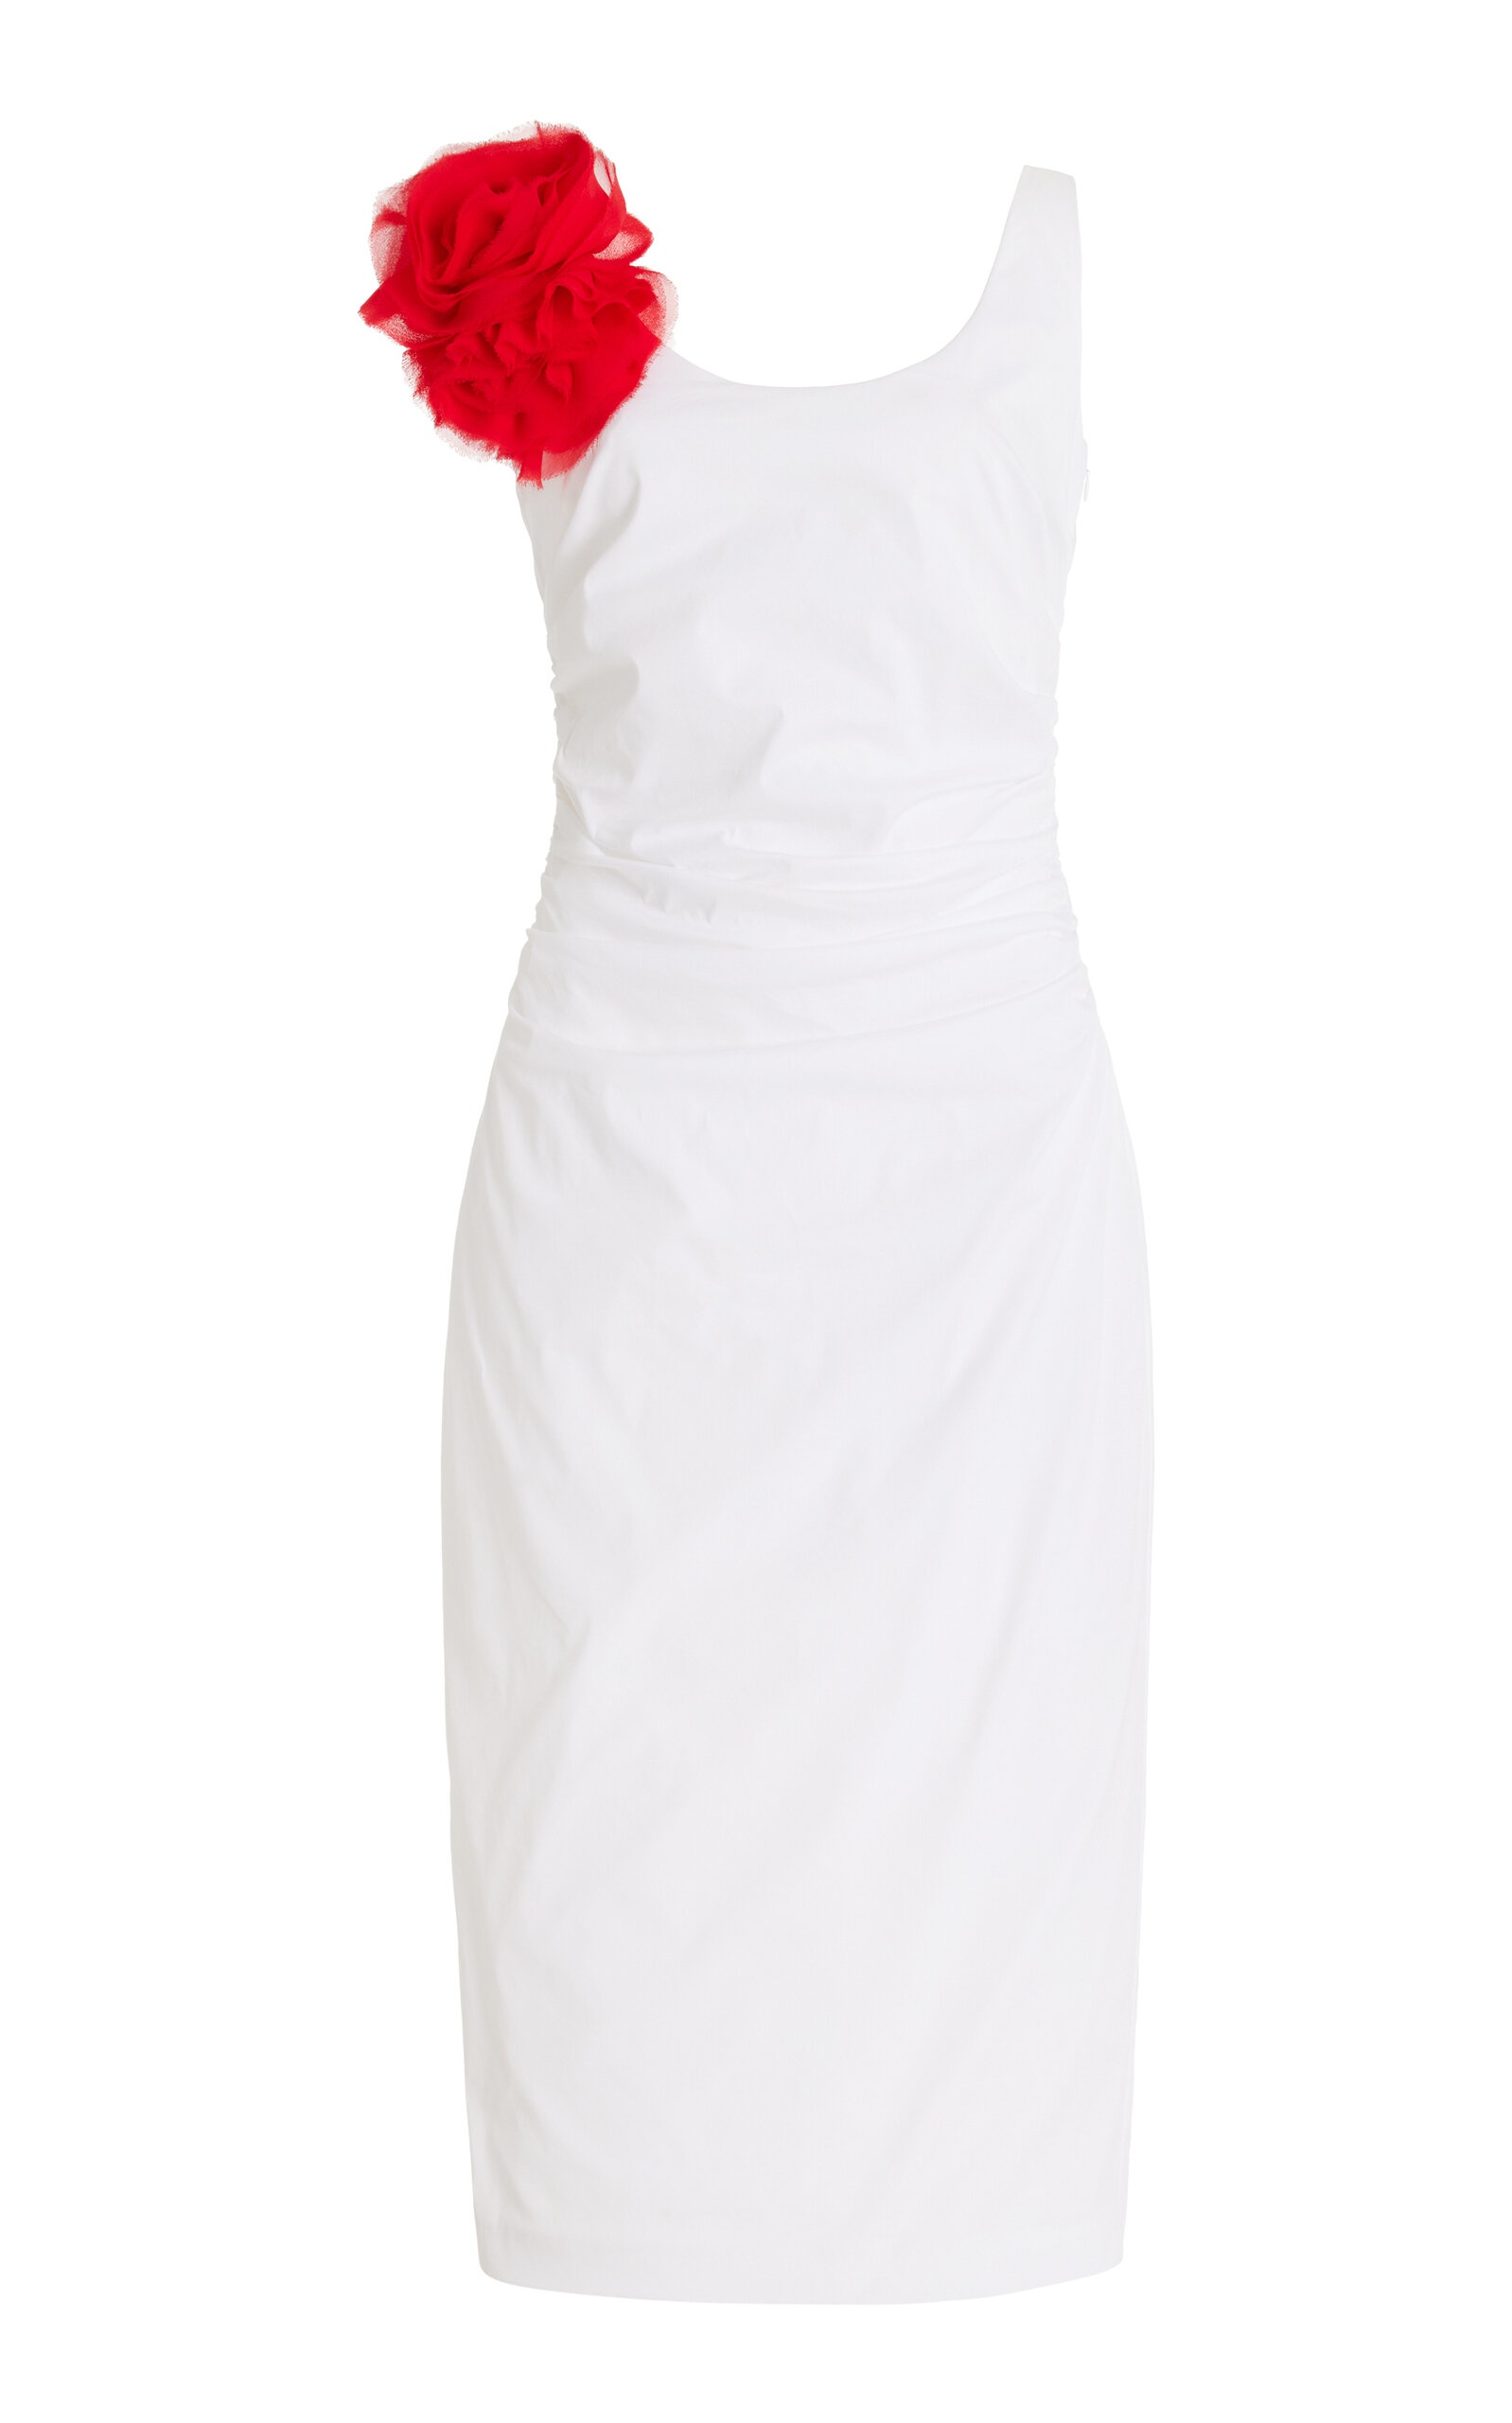 Giselle Rose Cotton-Blend Dress white - 1